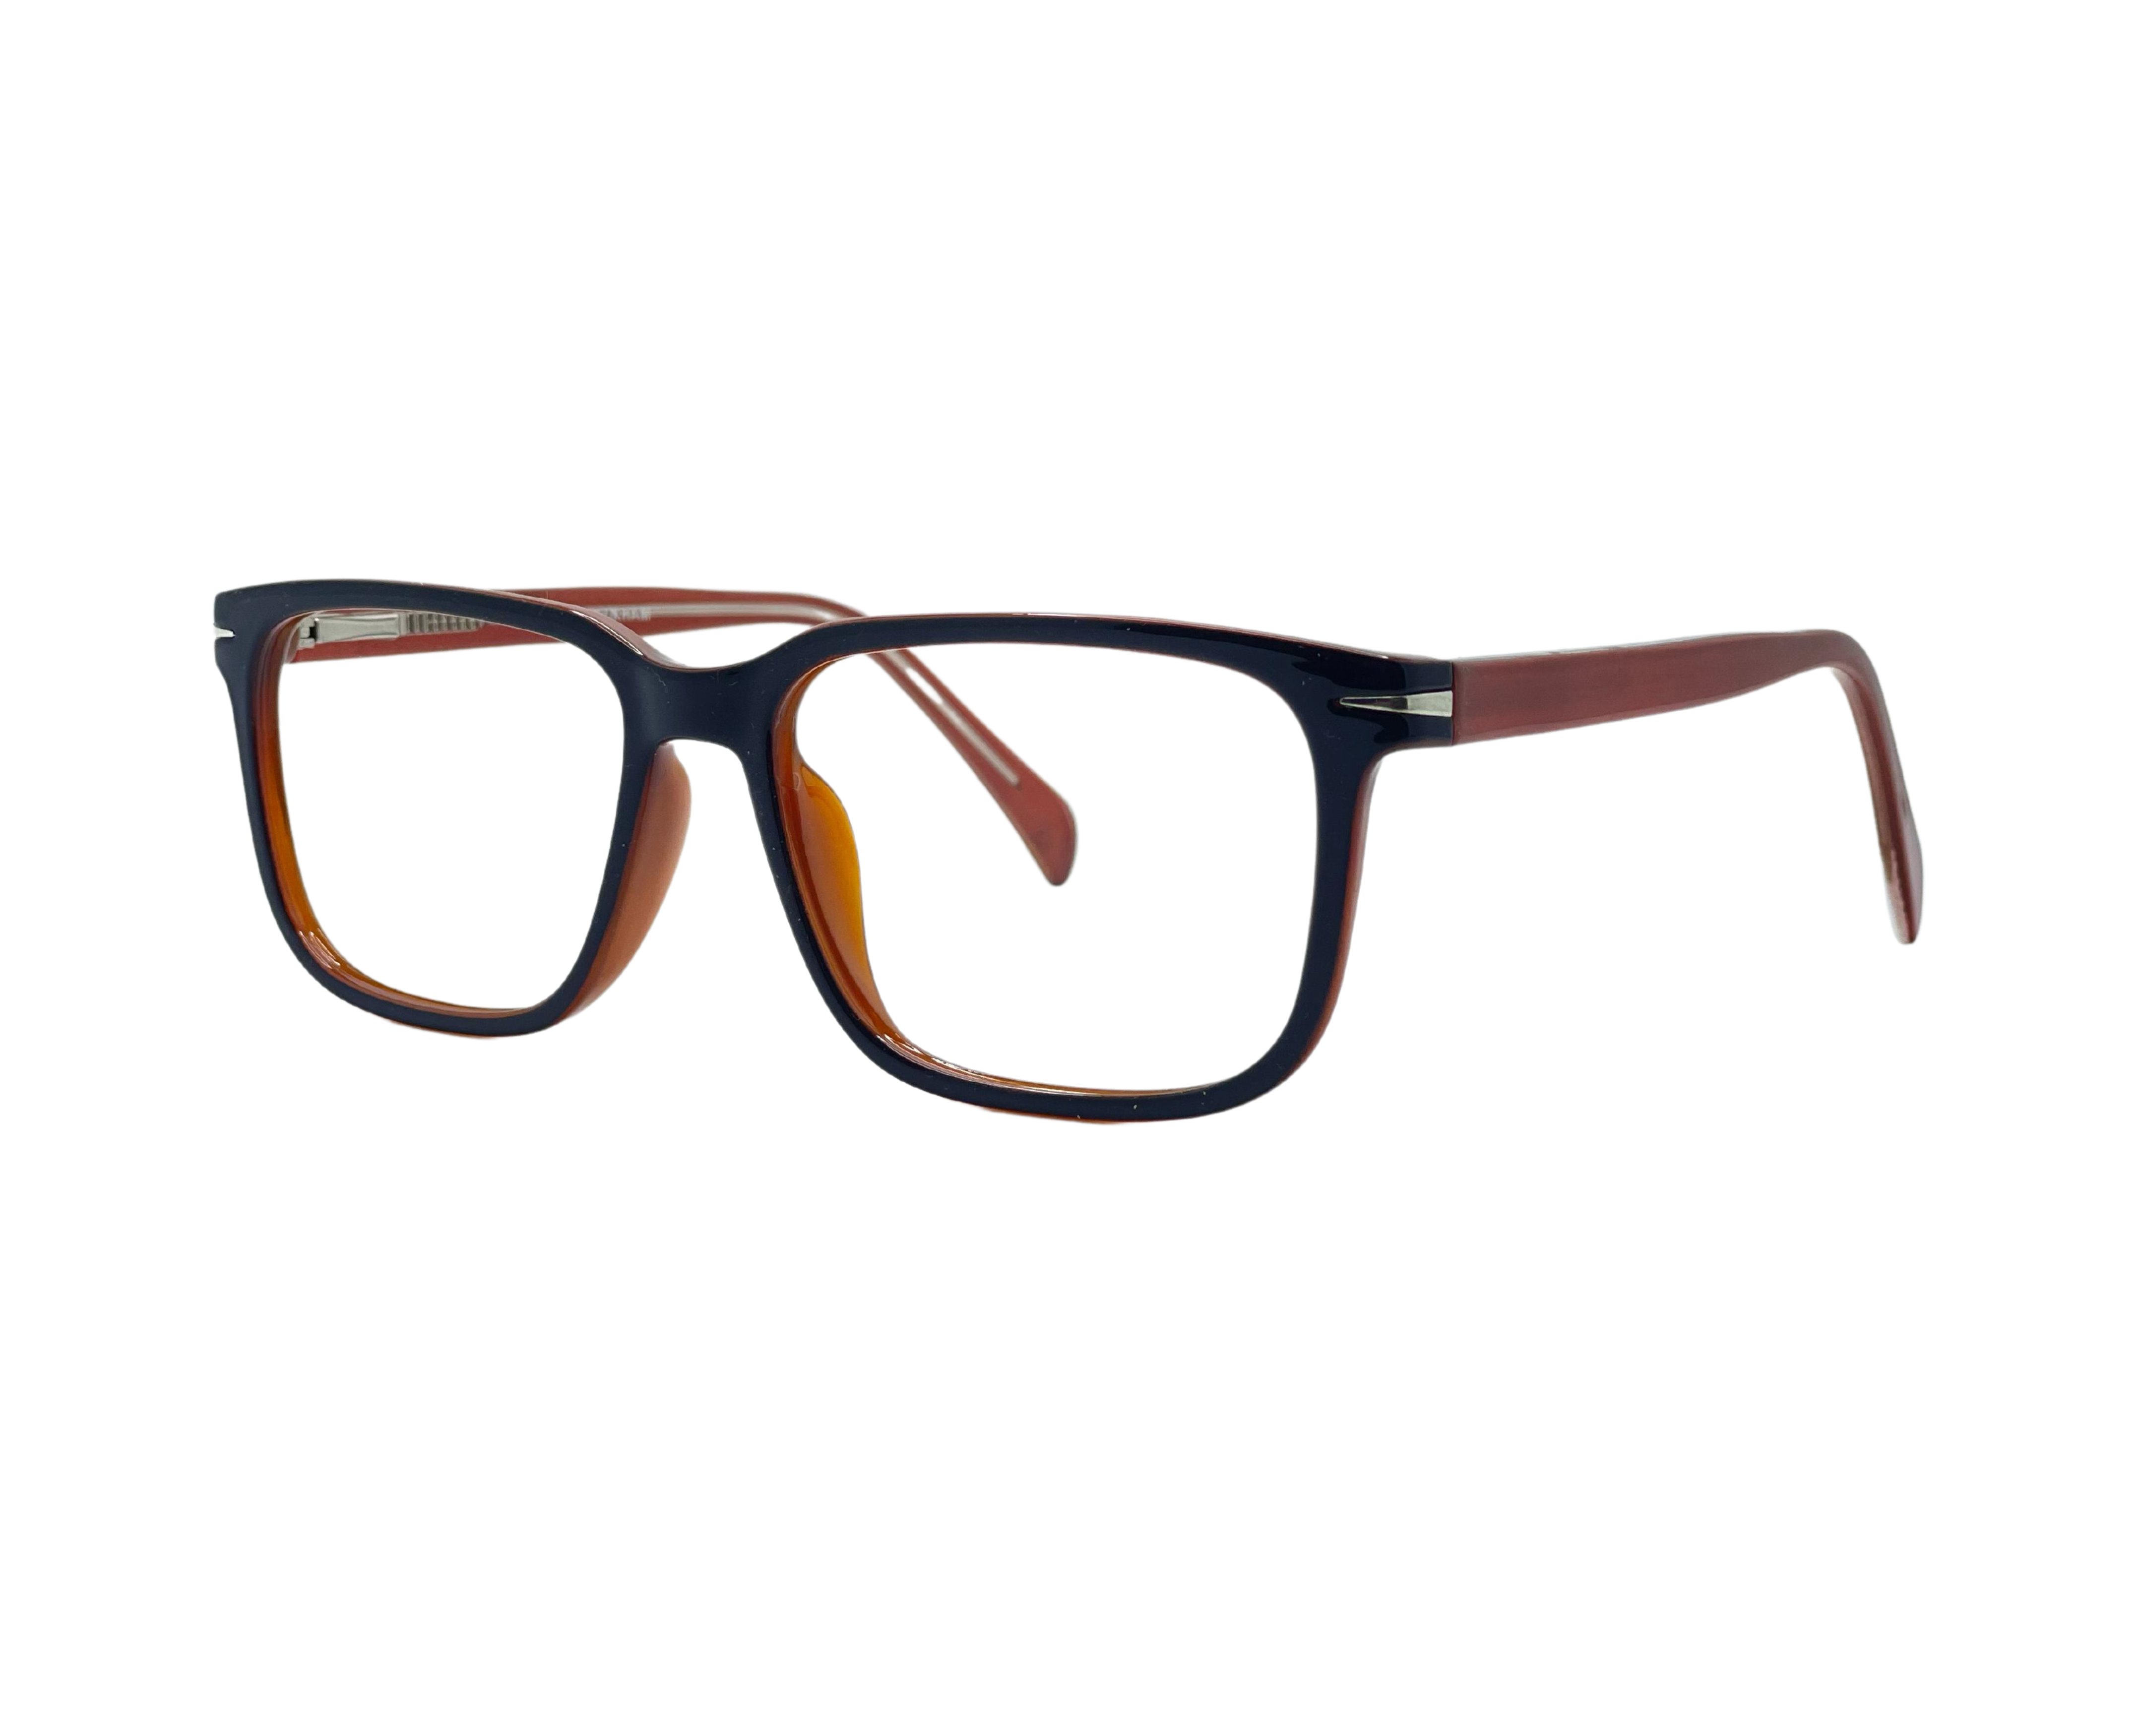 NS Deluxe - 001 - Black/Brown - Eyeglasses